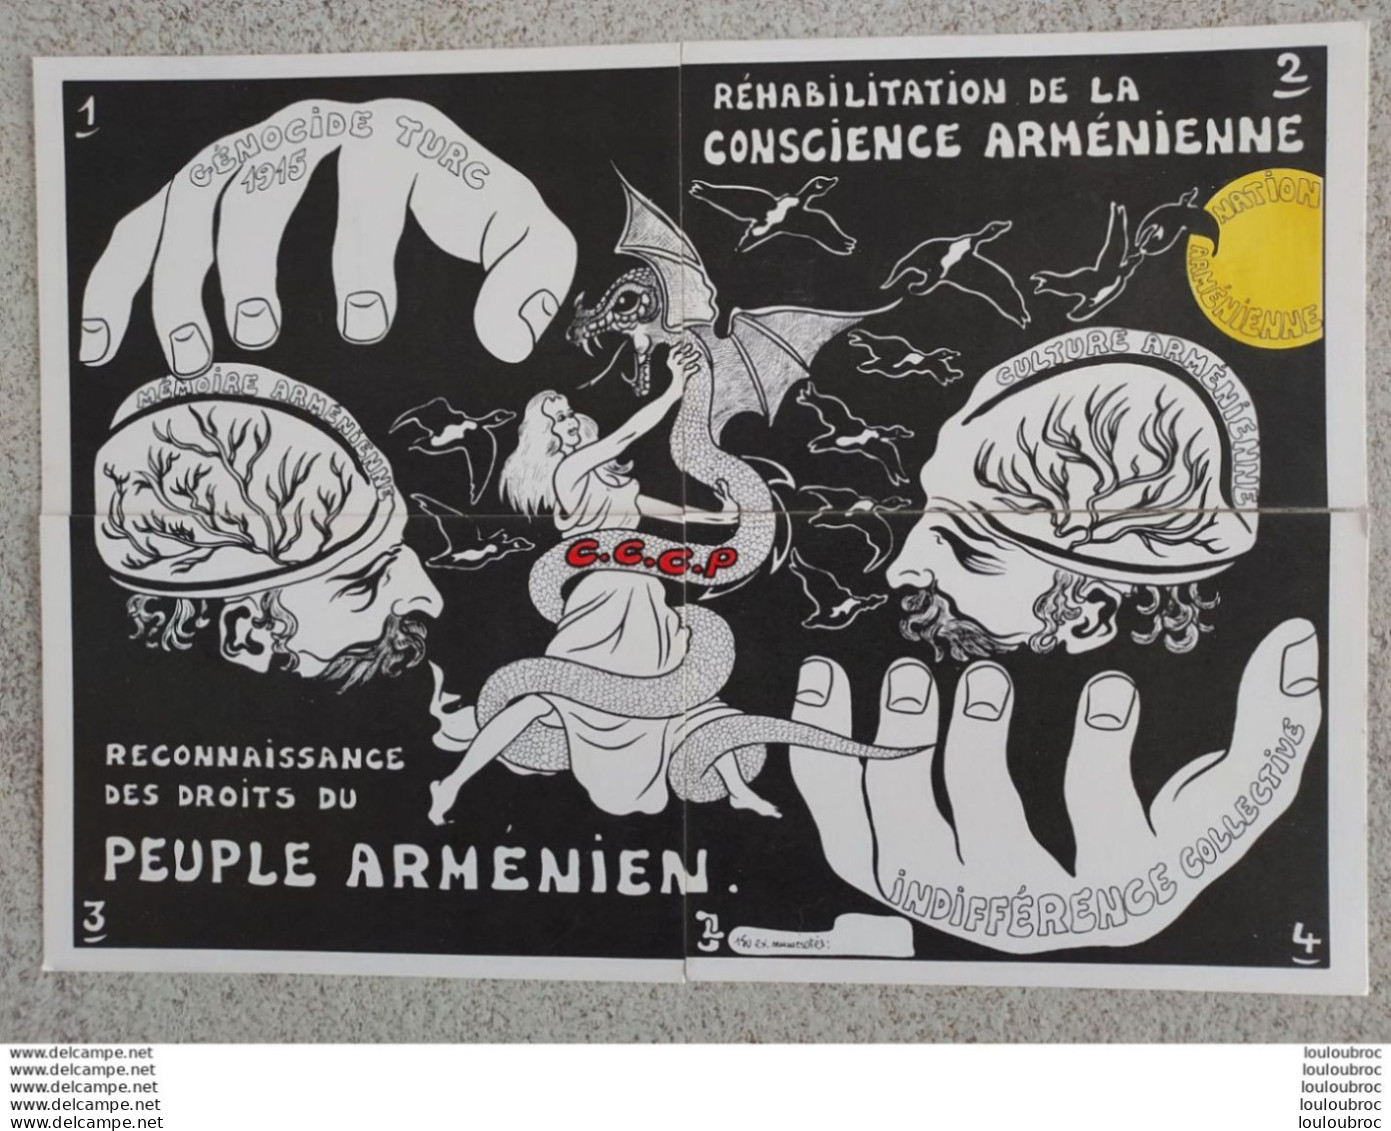 4 CARTES RECONNAISSANCE DES DROITS DU PEUPLE ARMENIEN  GENOCIDE TURC 1915 CARTES FORMANT PUZZLE CONSCIENCE ARMENIENNE - Satiriques